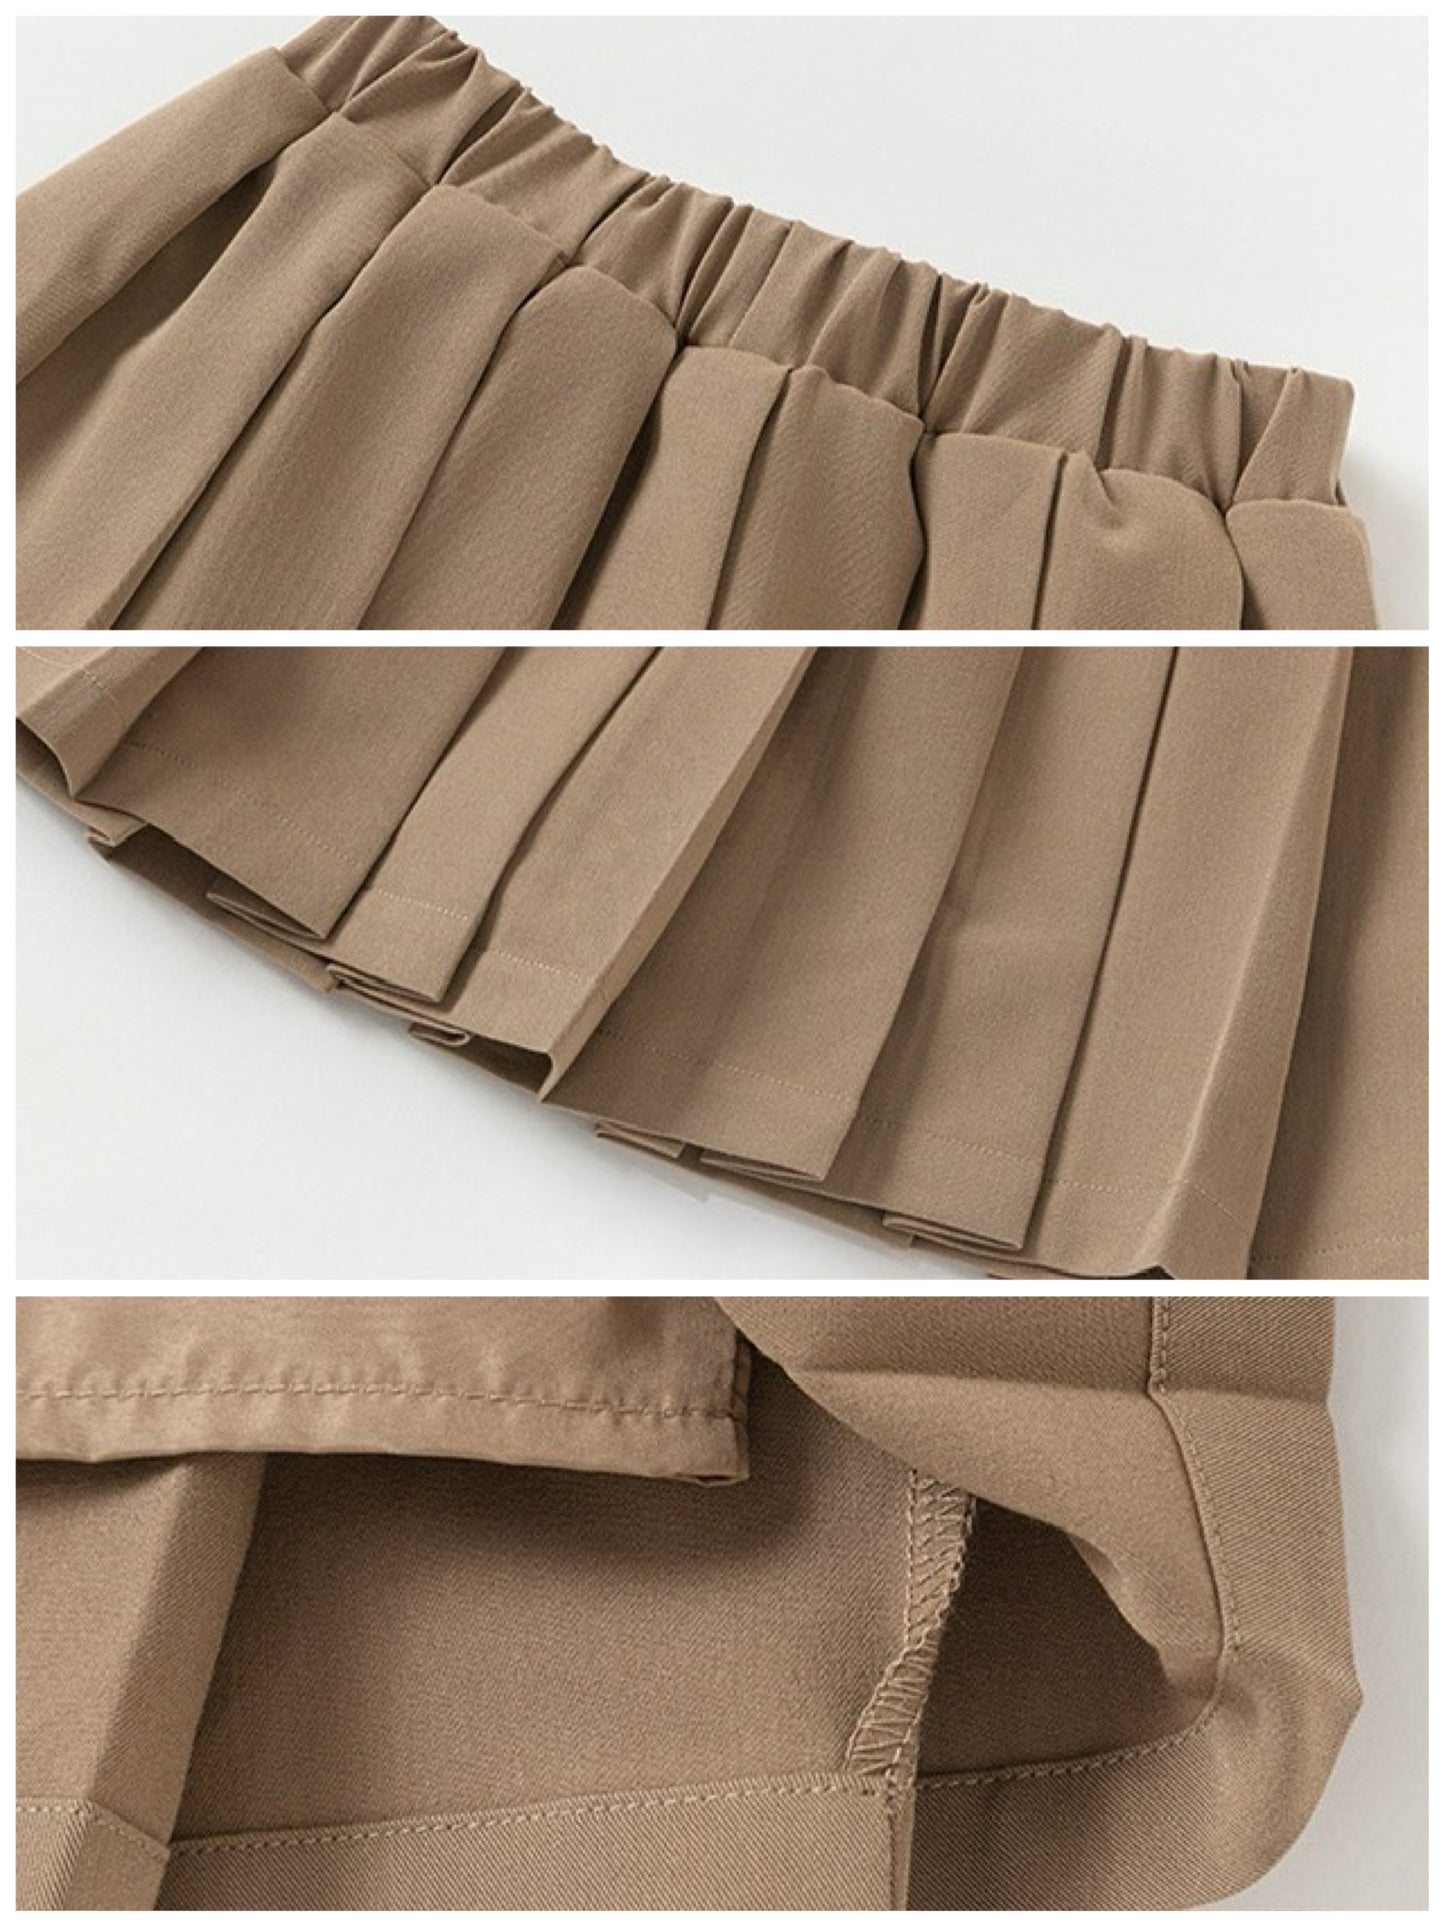 [90-160cm] Pleated mini skirt